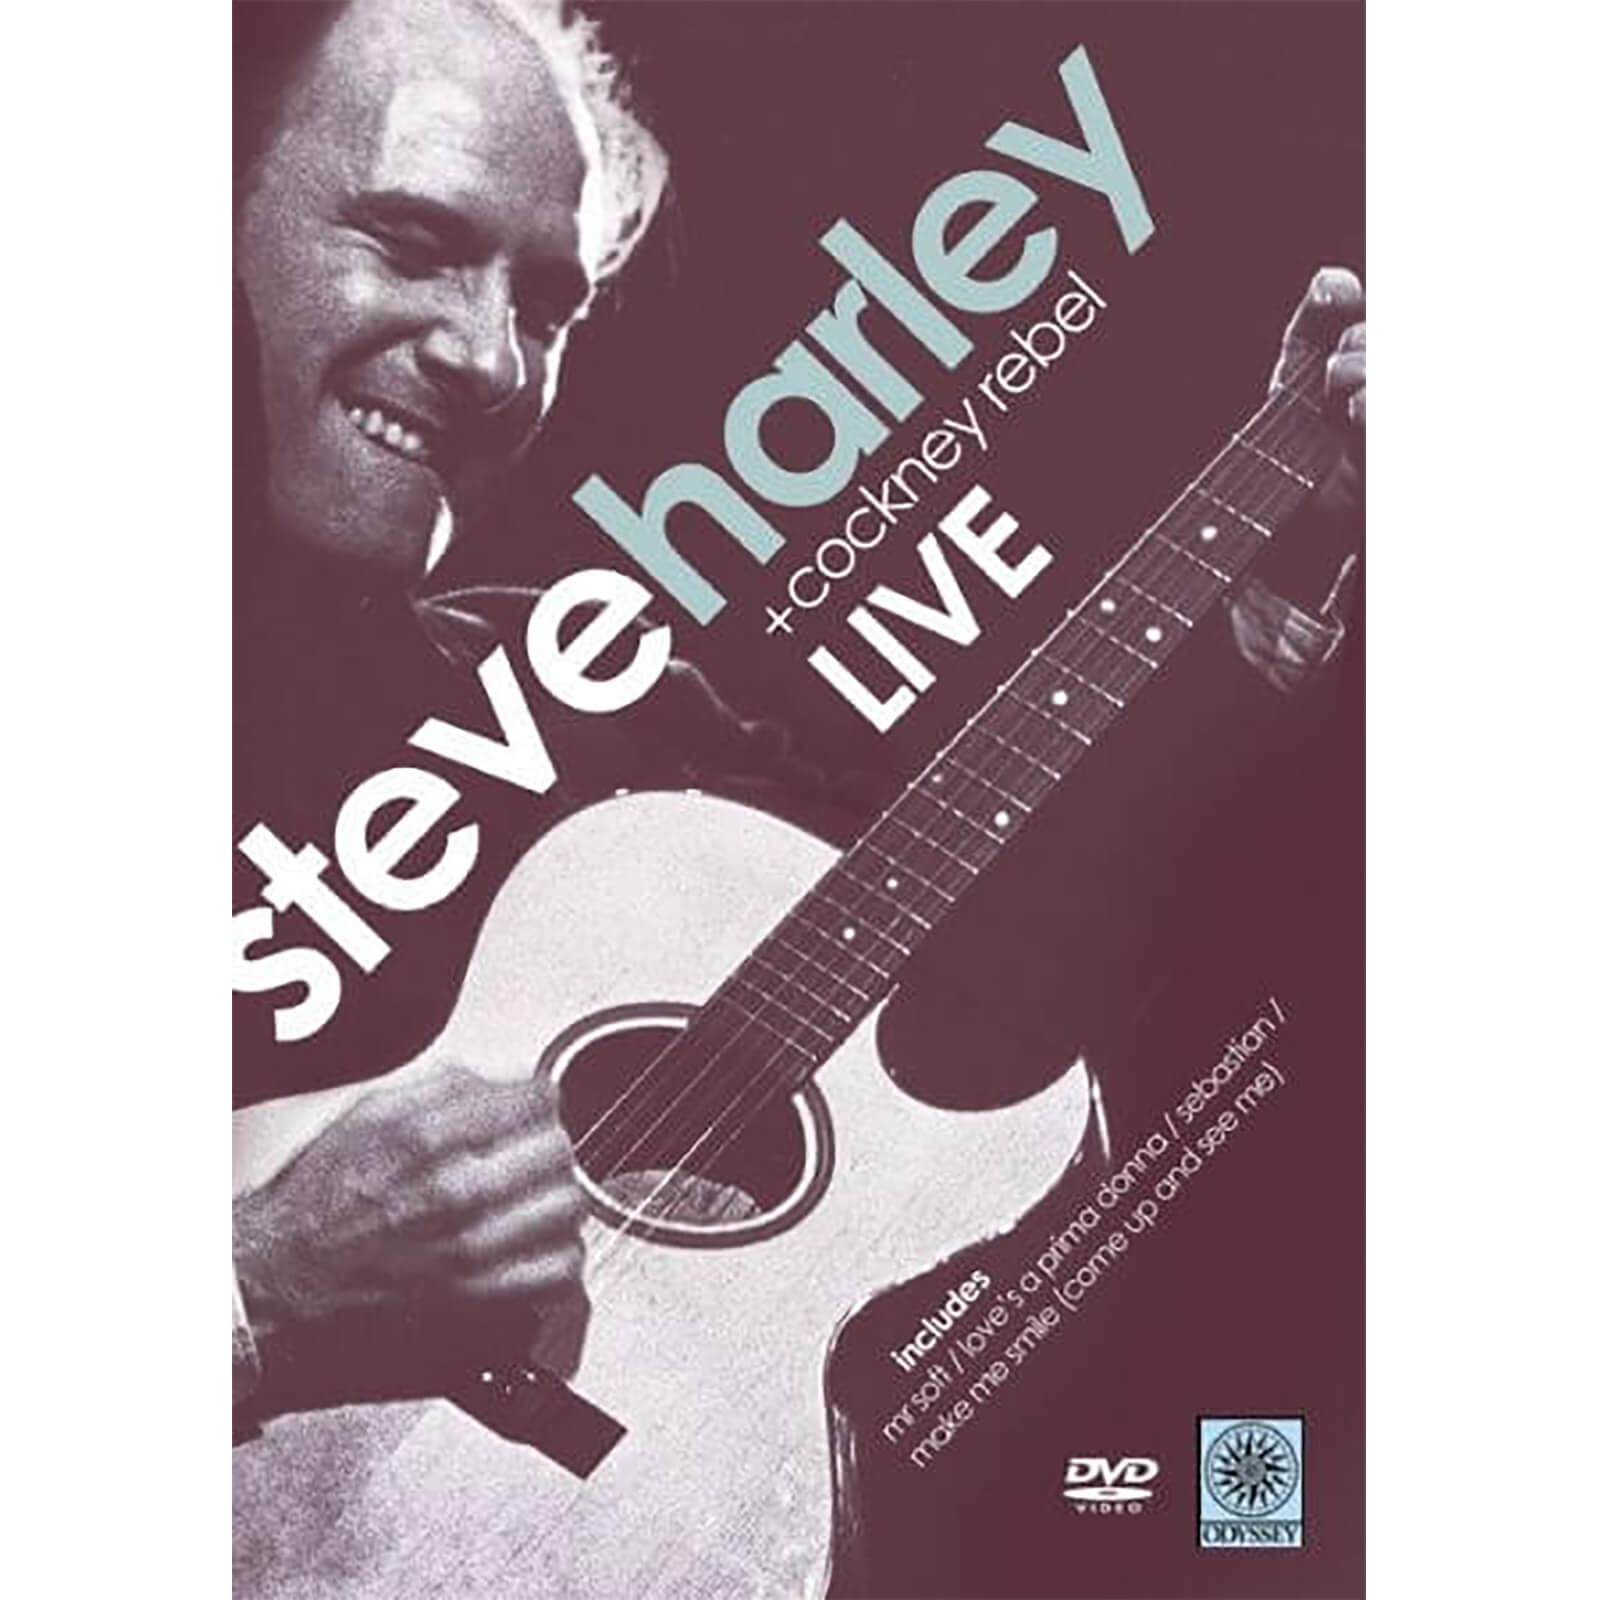 Steve Harley im Konzert von Odyssey